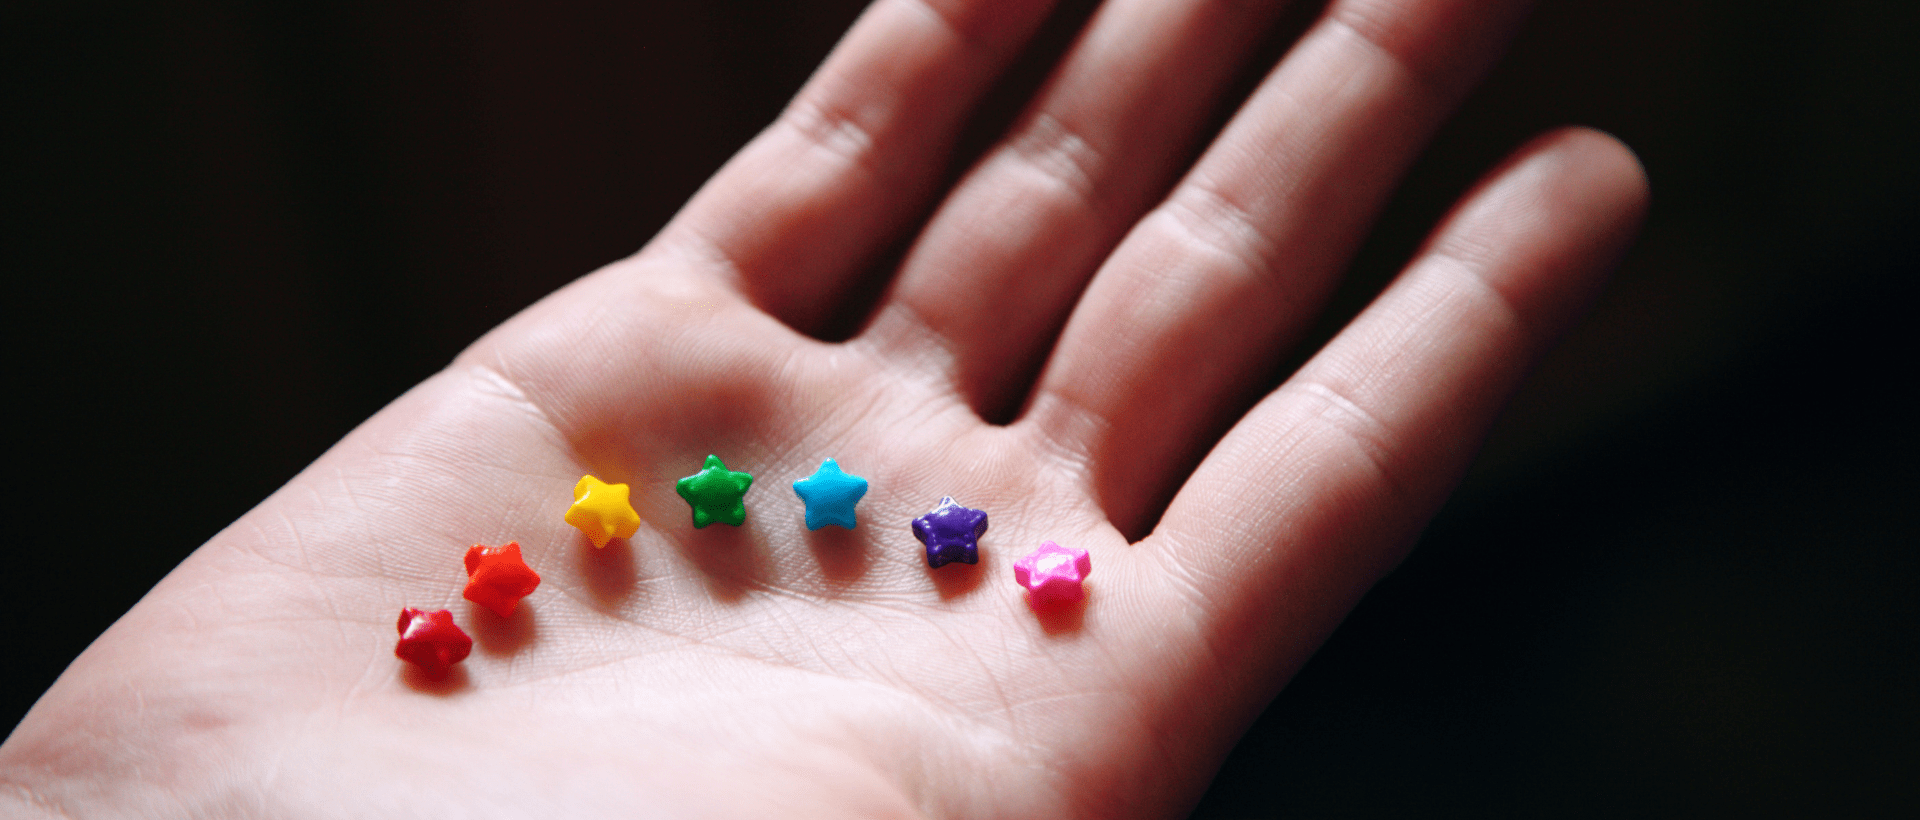 7 farbige Sternchen liegen auf einer Hand. Sie symbolisieren die Geschlechtsidentitäten. der Duden hat neue Regeln hinsichtlich Gendern erlassen, die sich auch aufs Marketing auswirken.